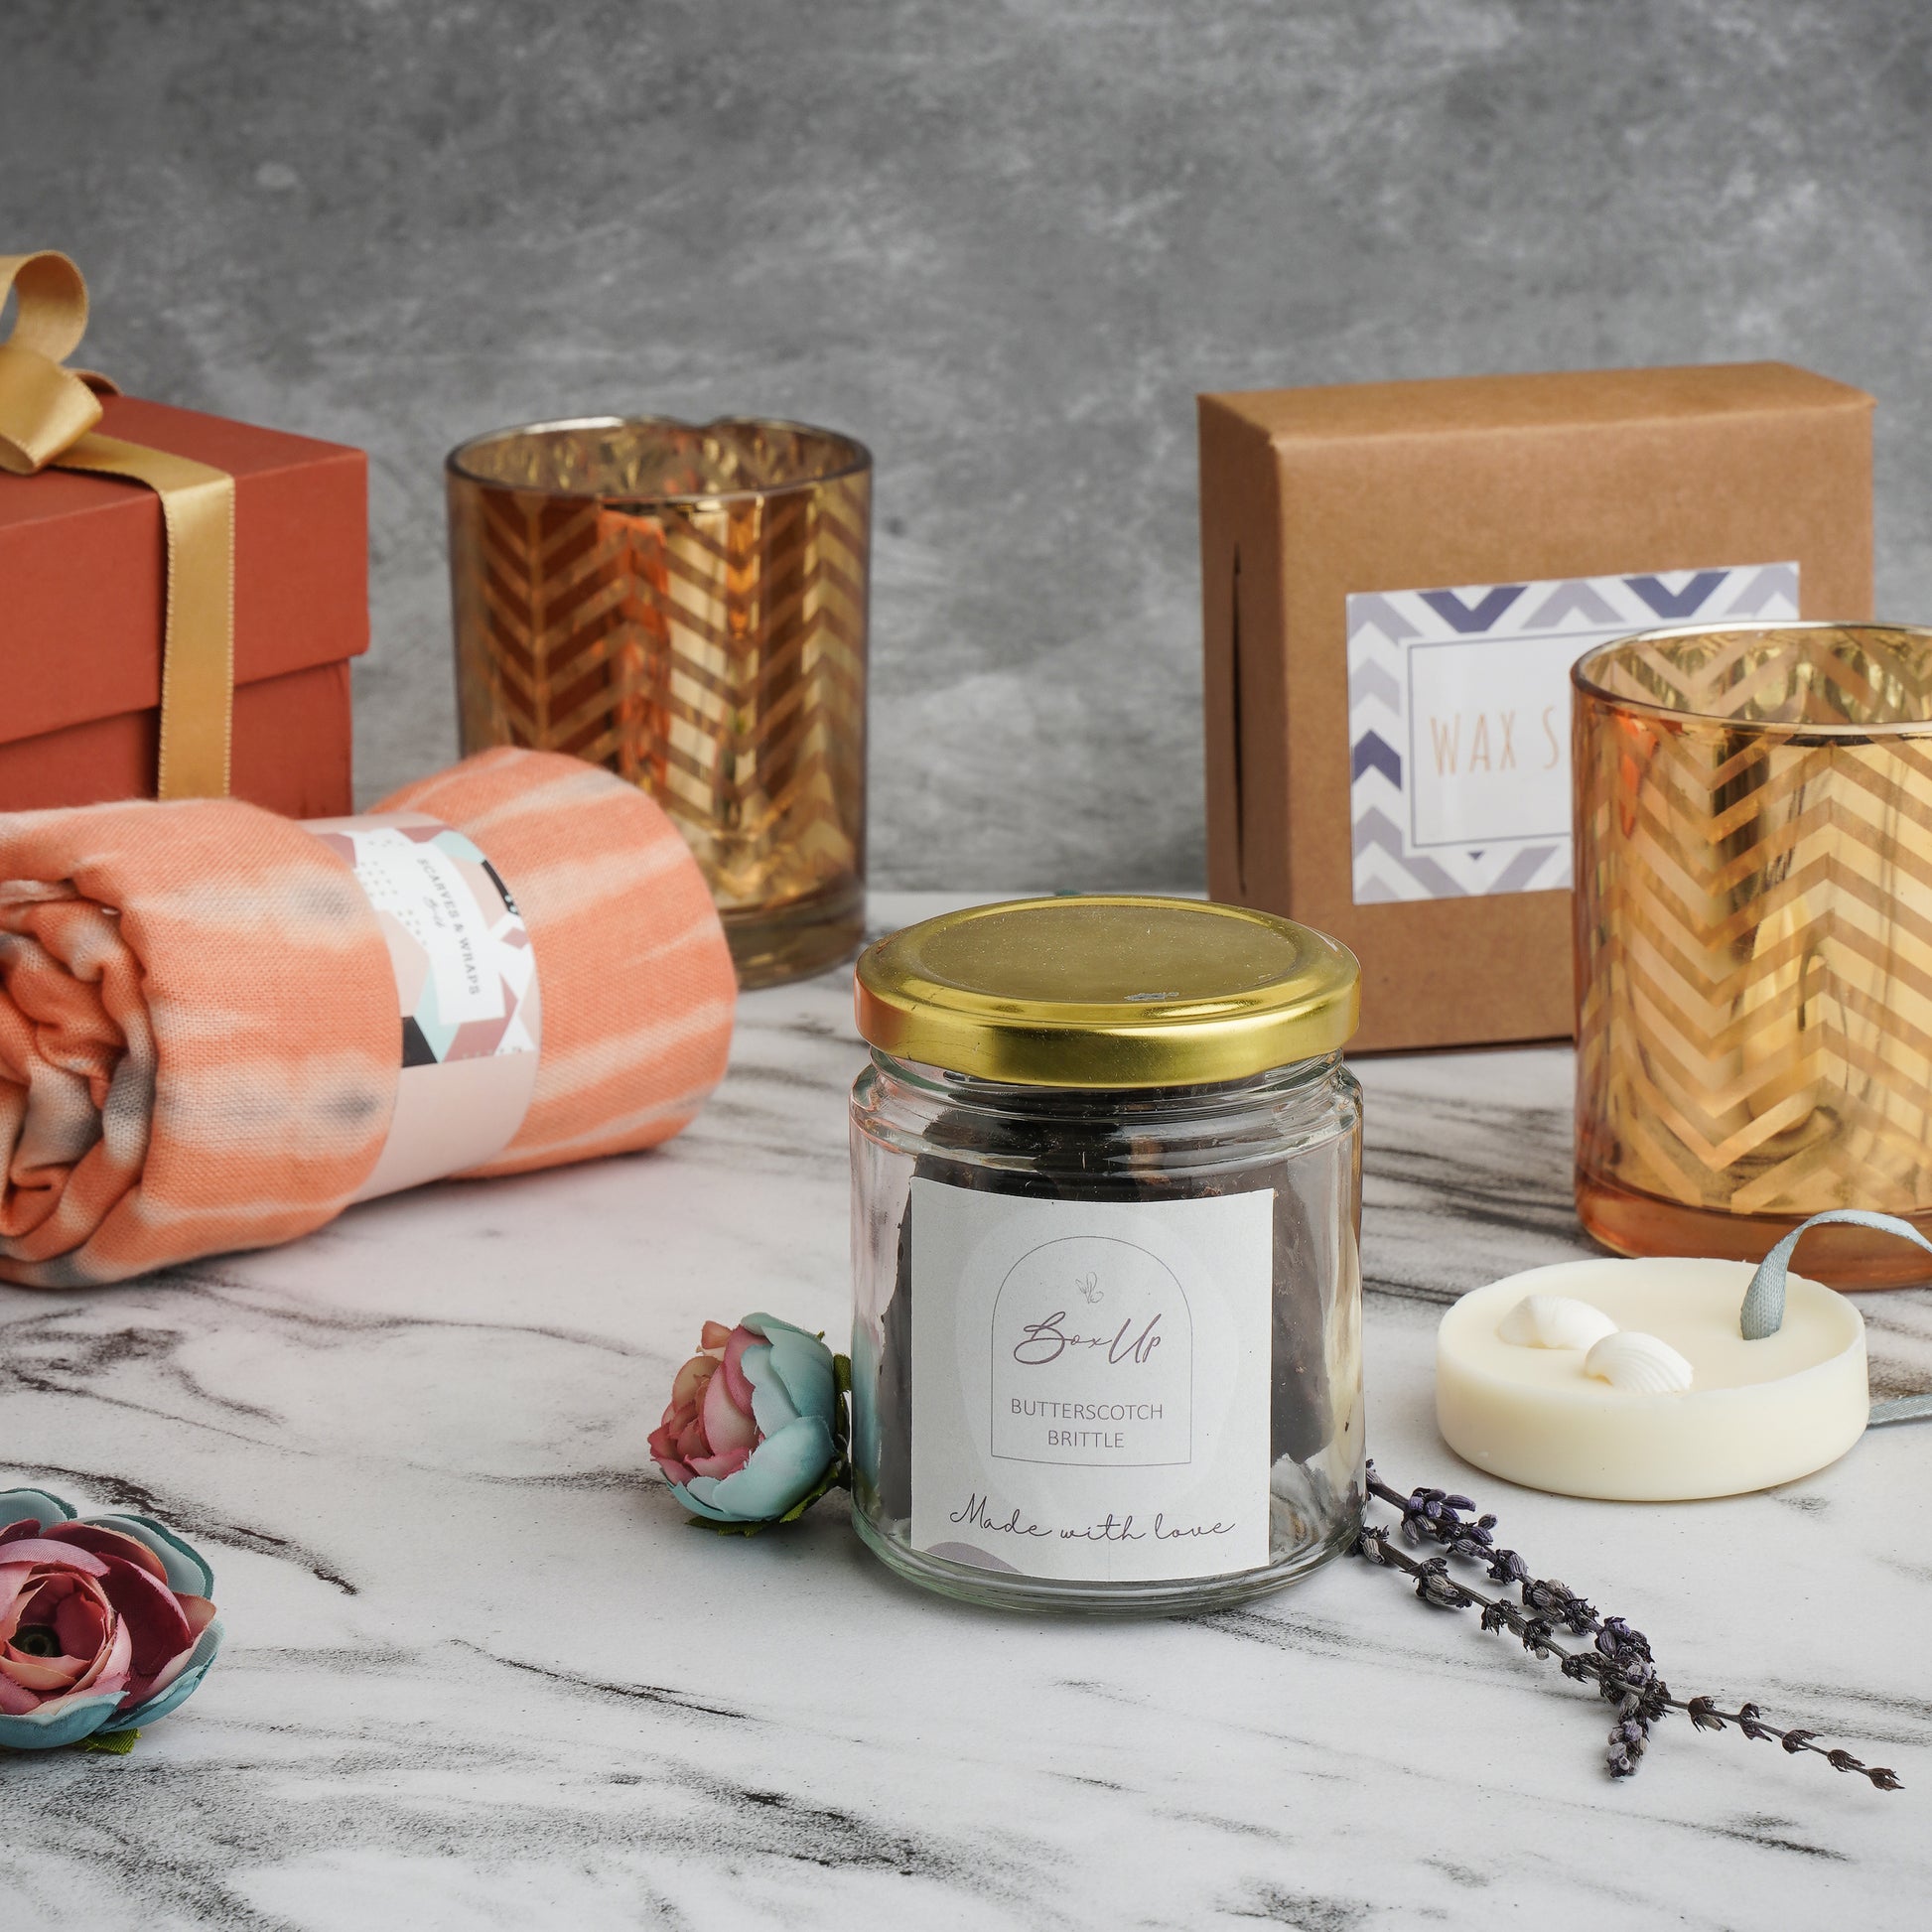 Buy Aesthetic Delight Gift Box Online – BoxUp Luxury Gifting